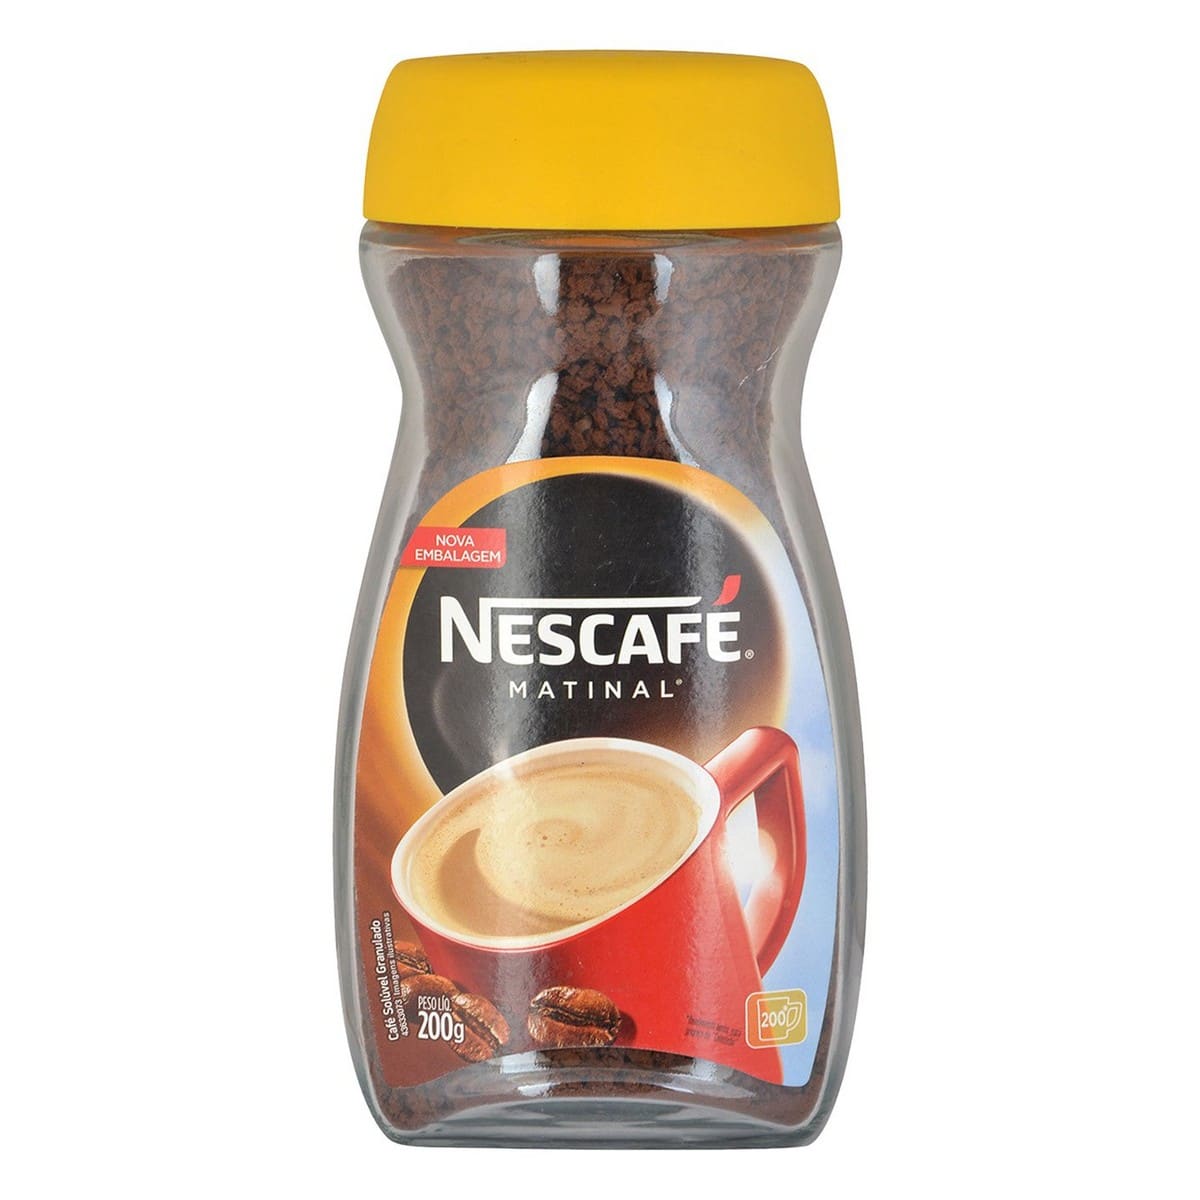 https://richesm.com/wp-content/uploads/2022/10/Nescafe-Matinal-Coffee-Bottle-200-grams-_2.jpg